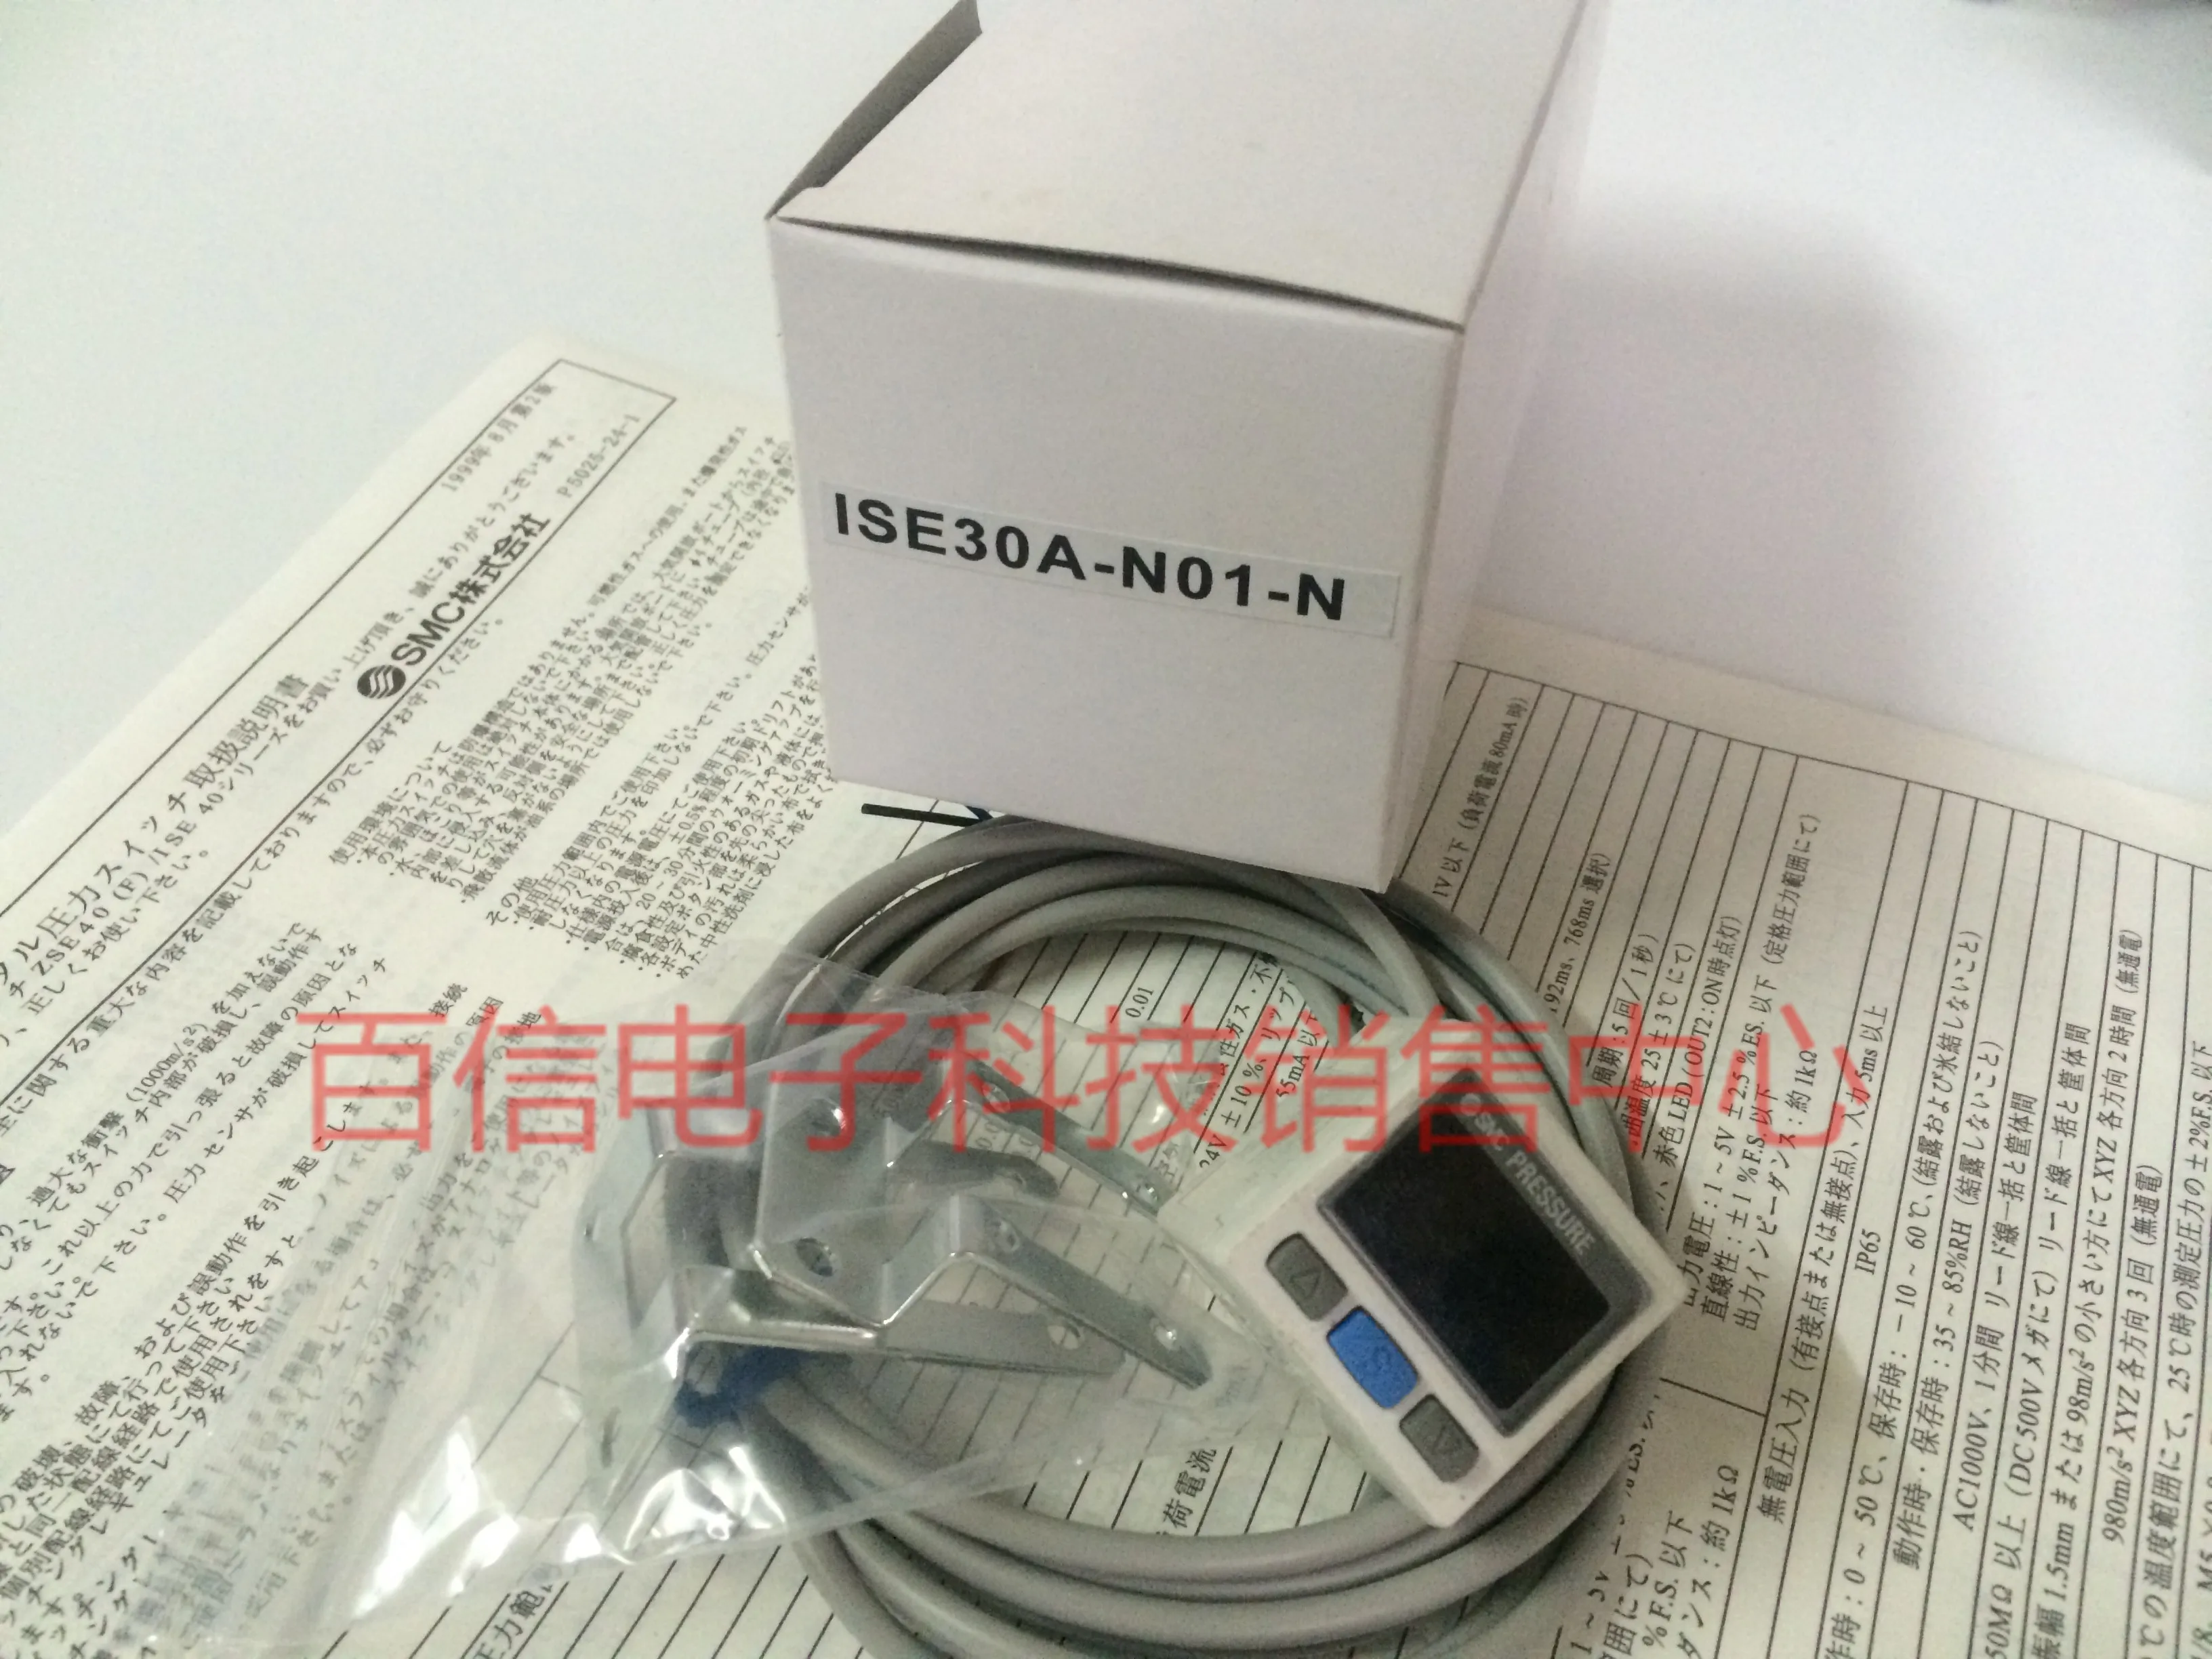 ISE30A-N01-N High precision digital pressure switch